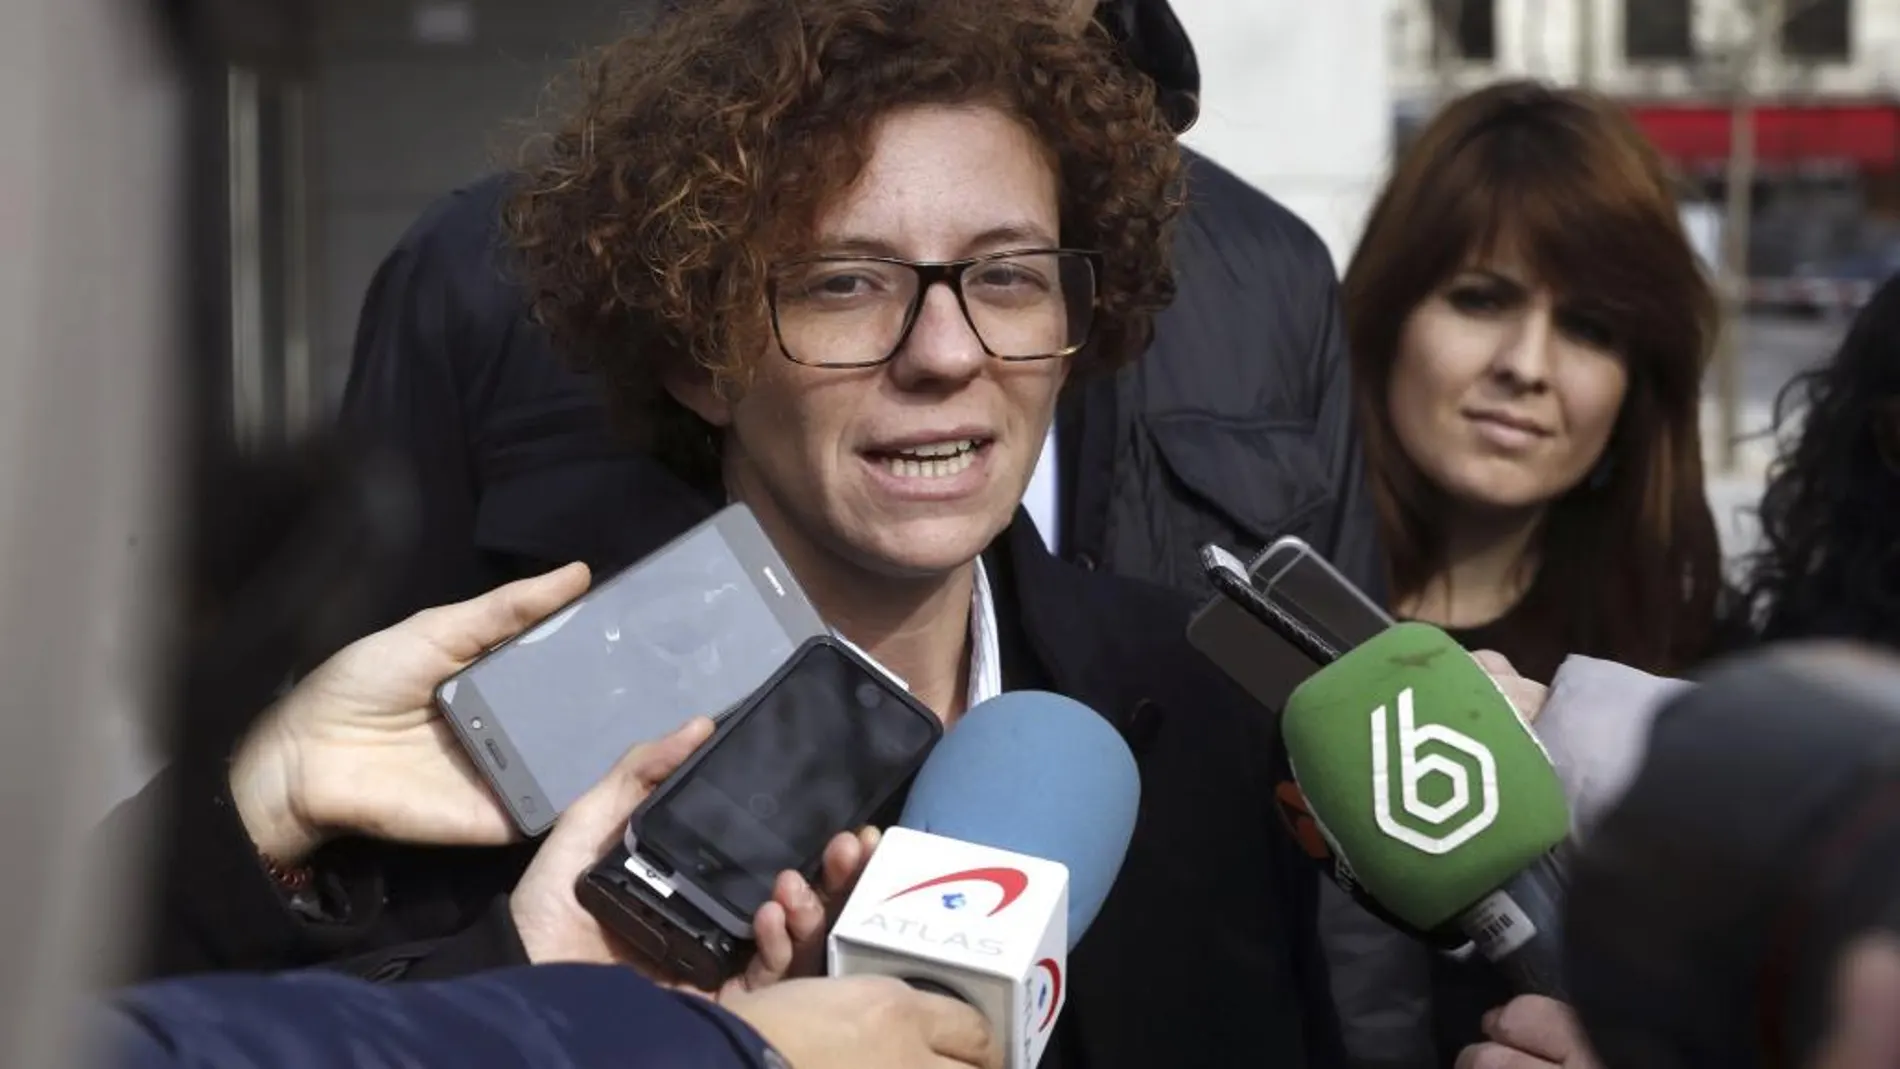 Marisol Moreno, conocida como Marisol la Roja, atiende a los medios a su salida de la Audiencia Nacional.